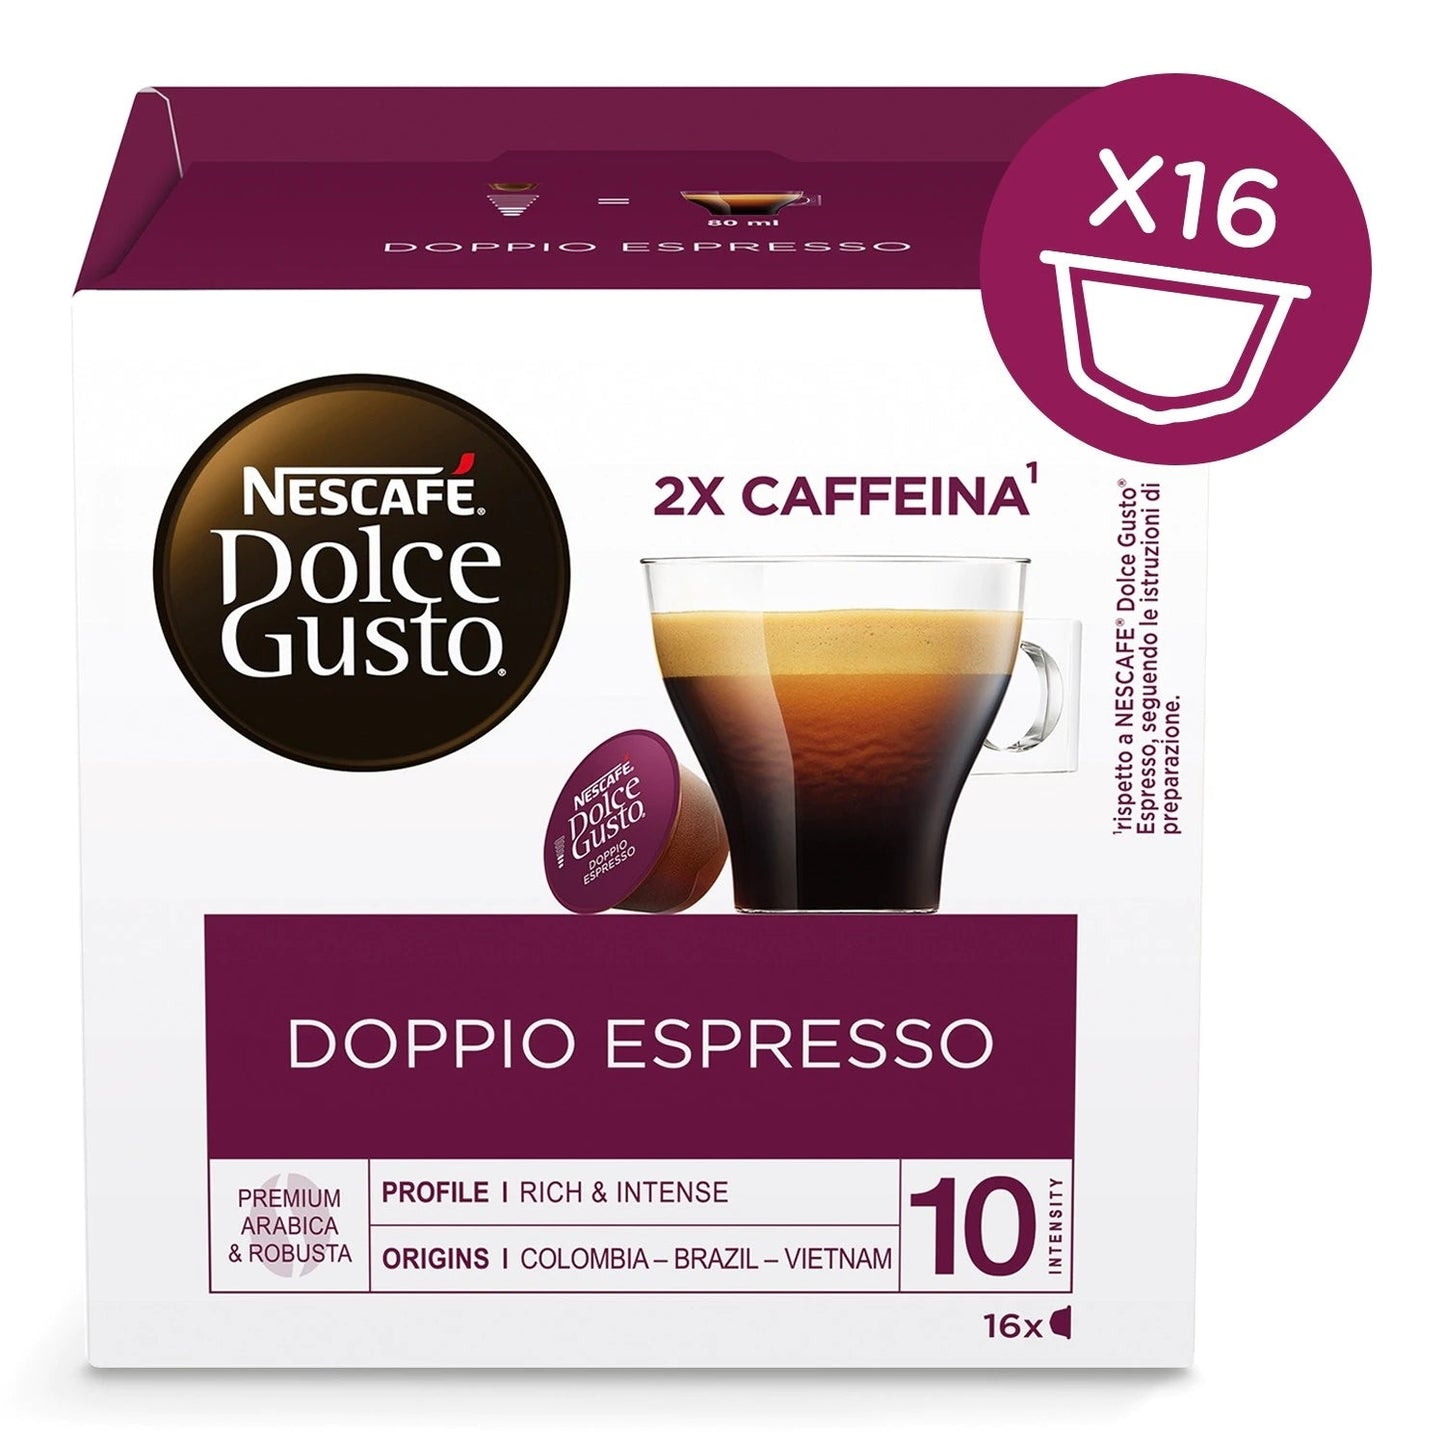 NESTLE' Dolce Gusto Doppio Espresso - Conf. 16